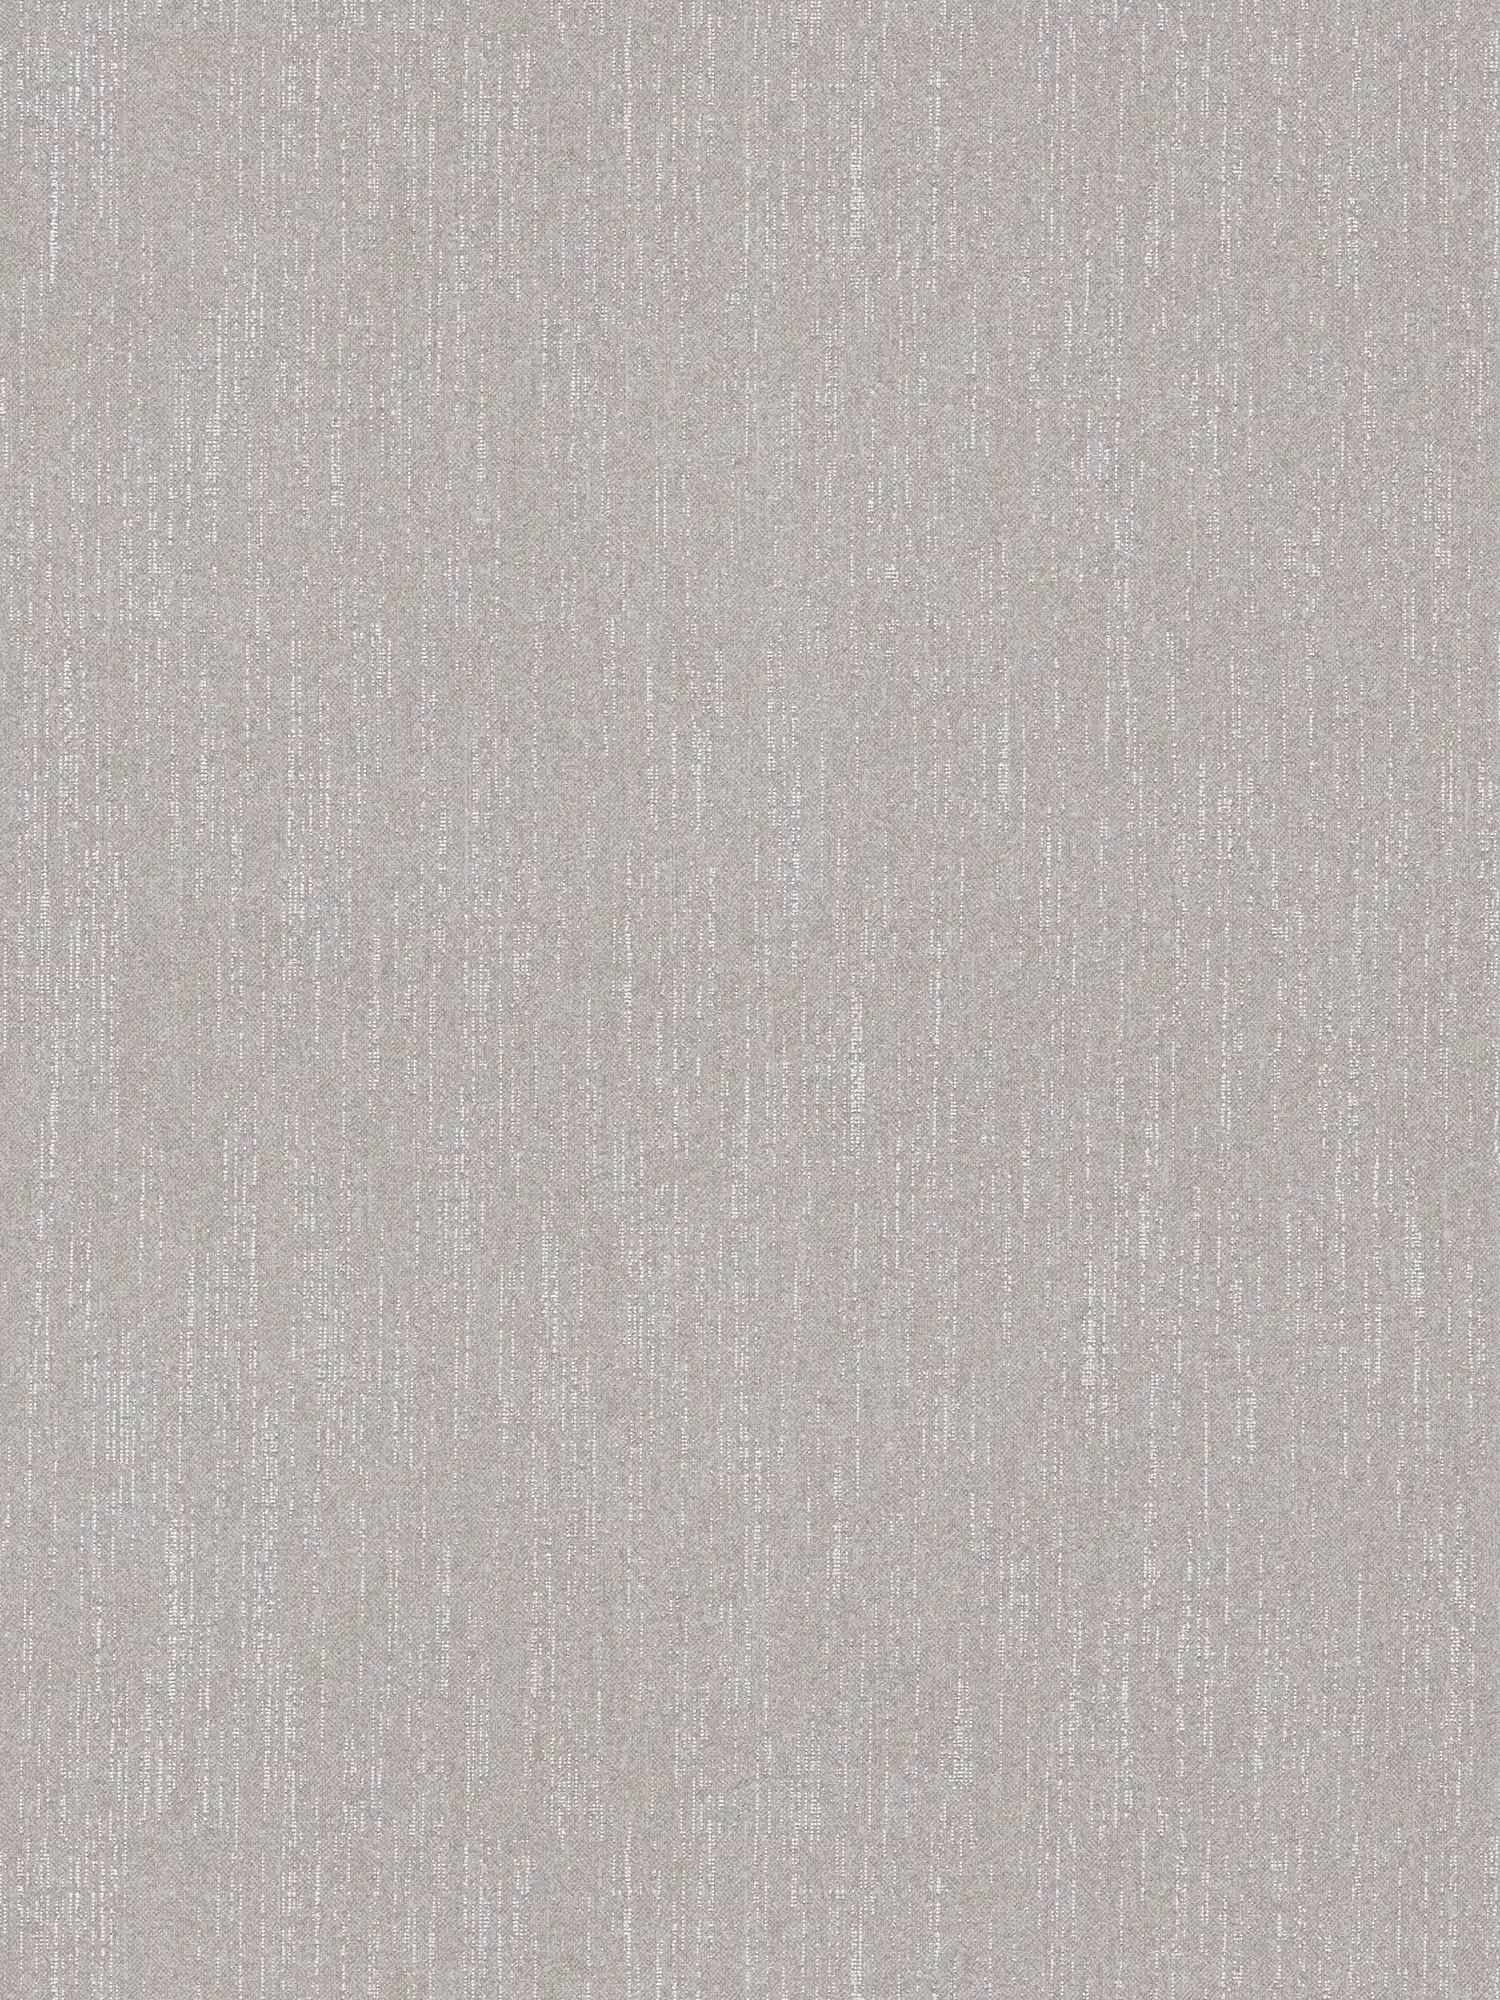 Papel pintado liso gris plata con efecto bouclé - gris
